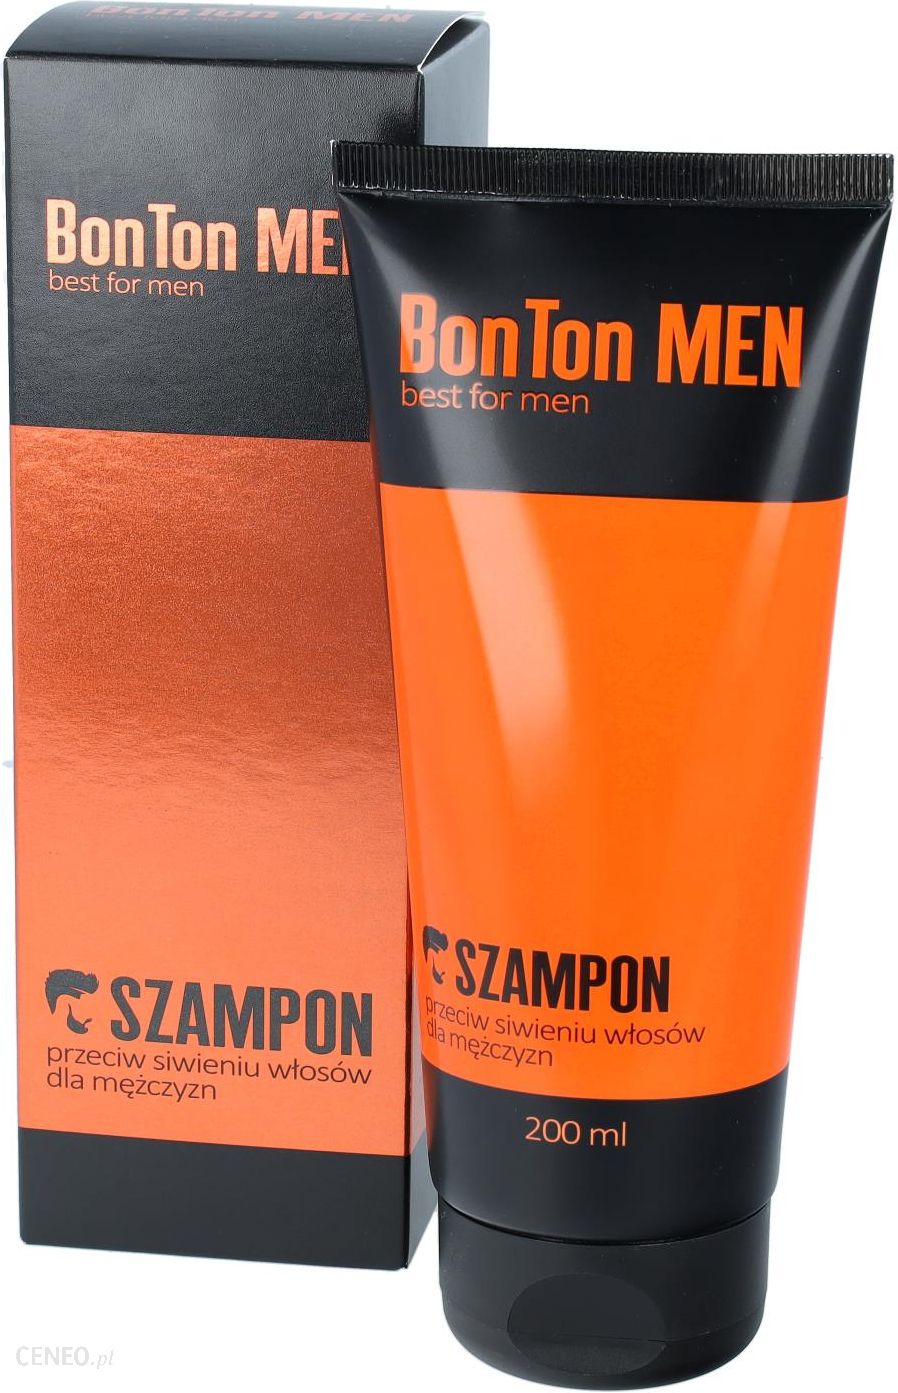 marion men style 100 szampon do włosów przeciw siwieniu opinie